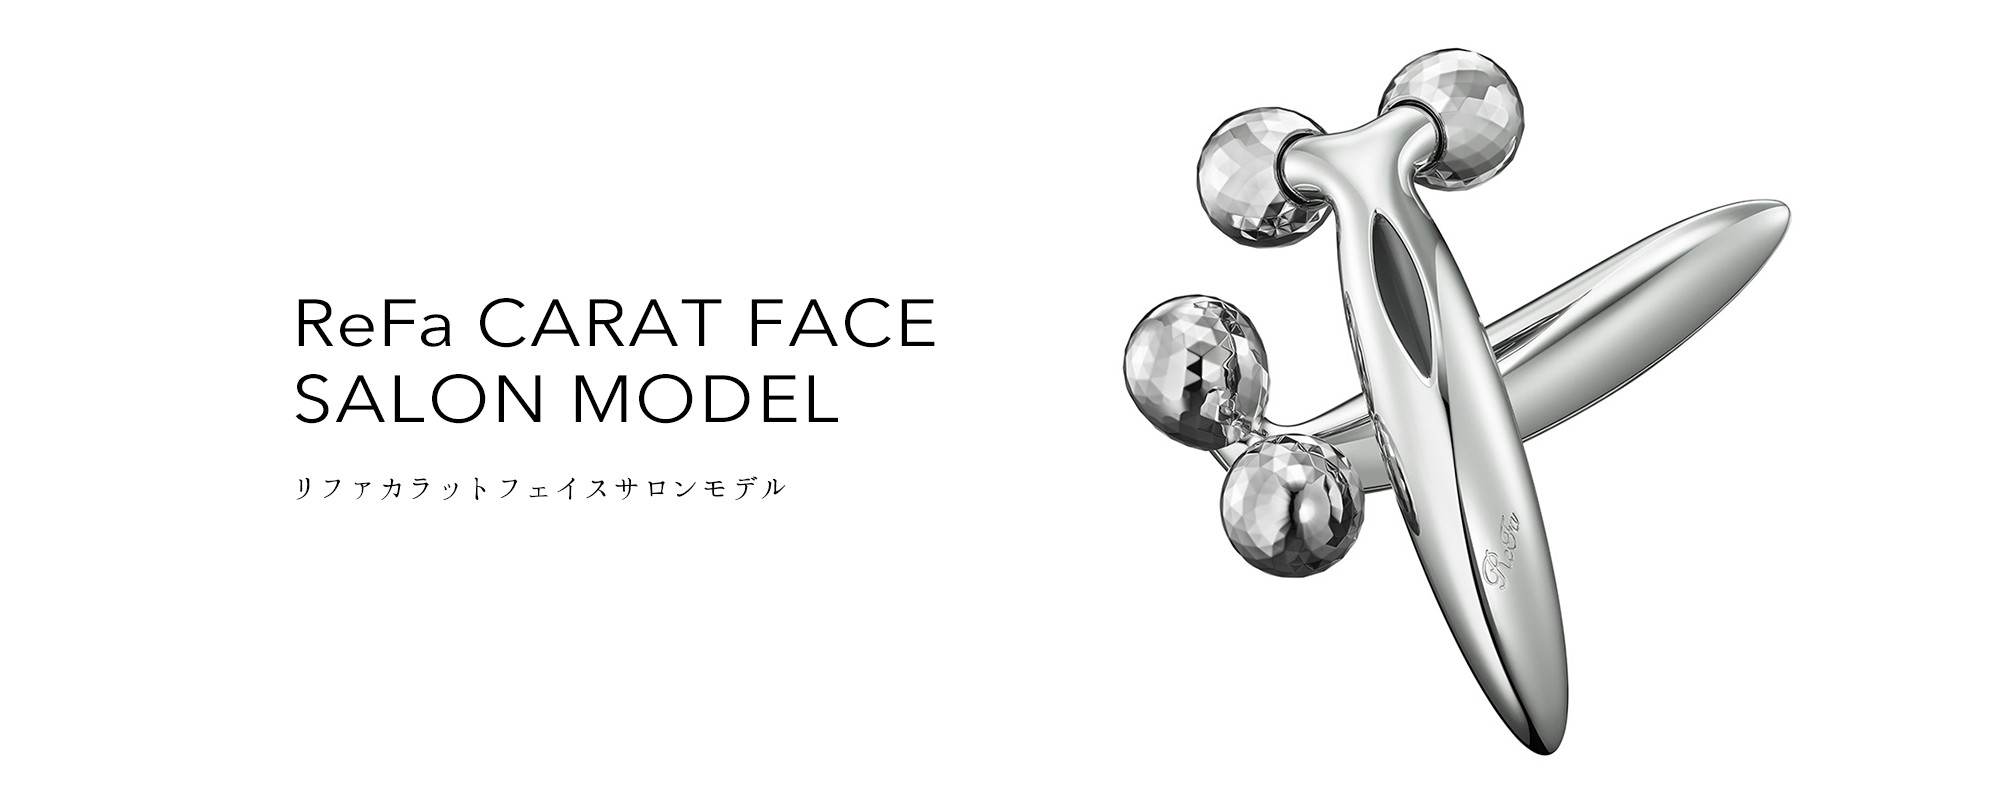 リファカラットフェイスサロンモデル - ReFa CARAT FACE SALON MODEL